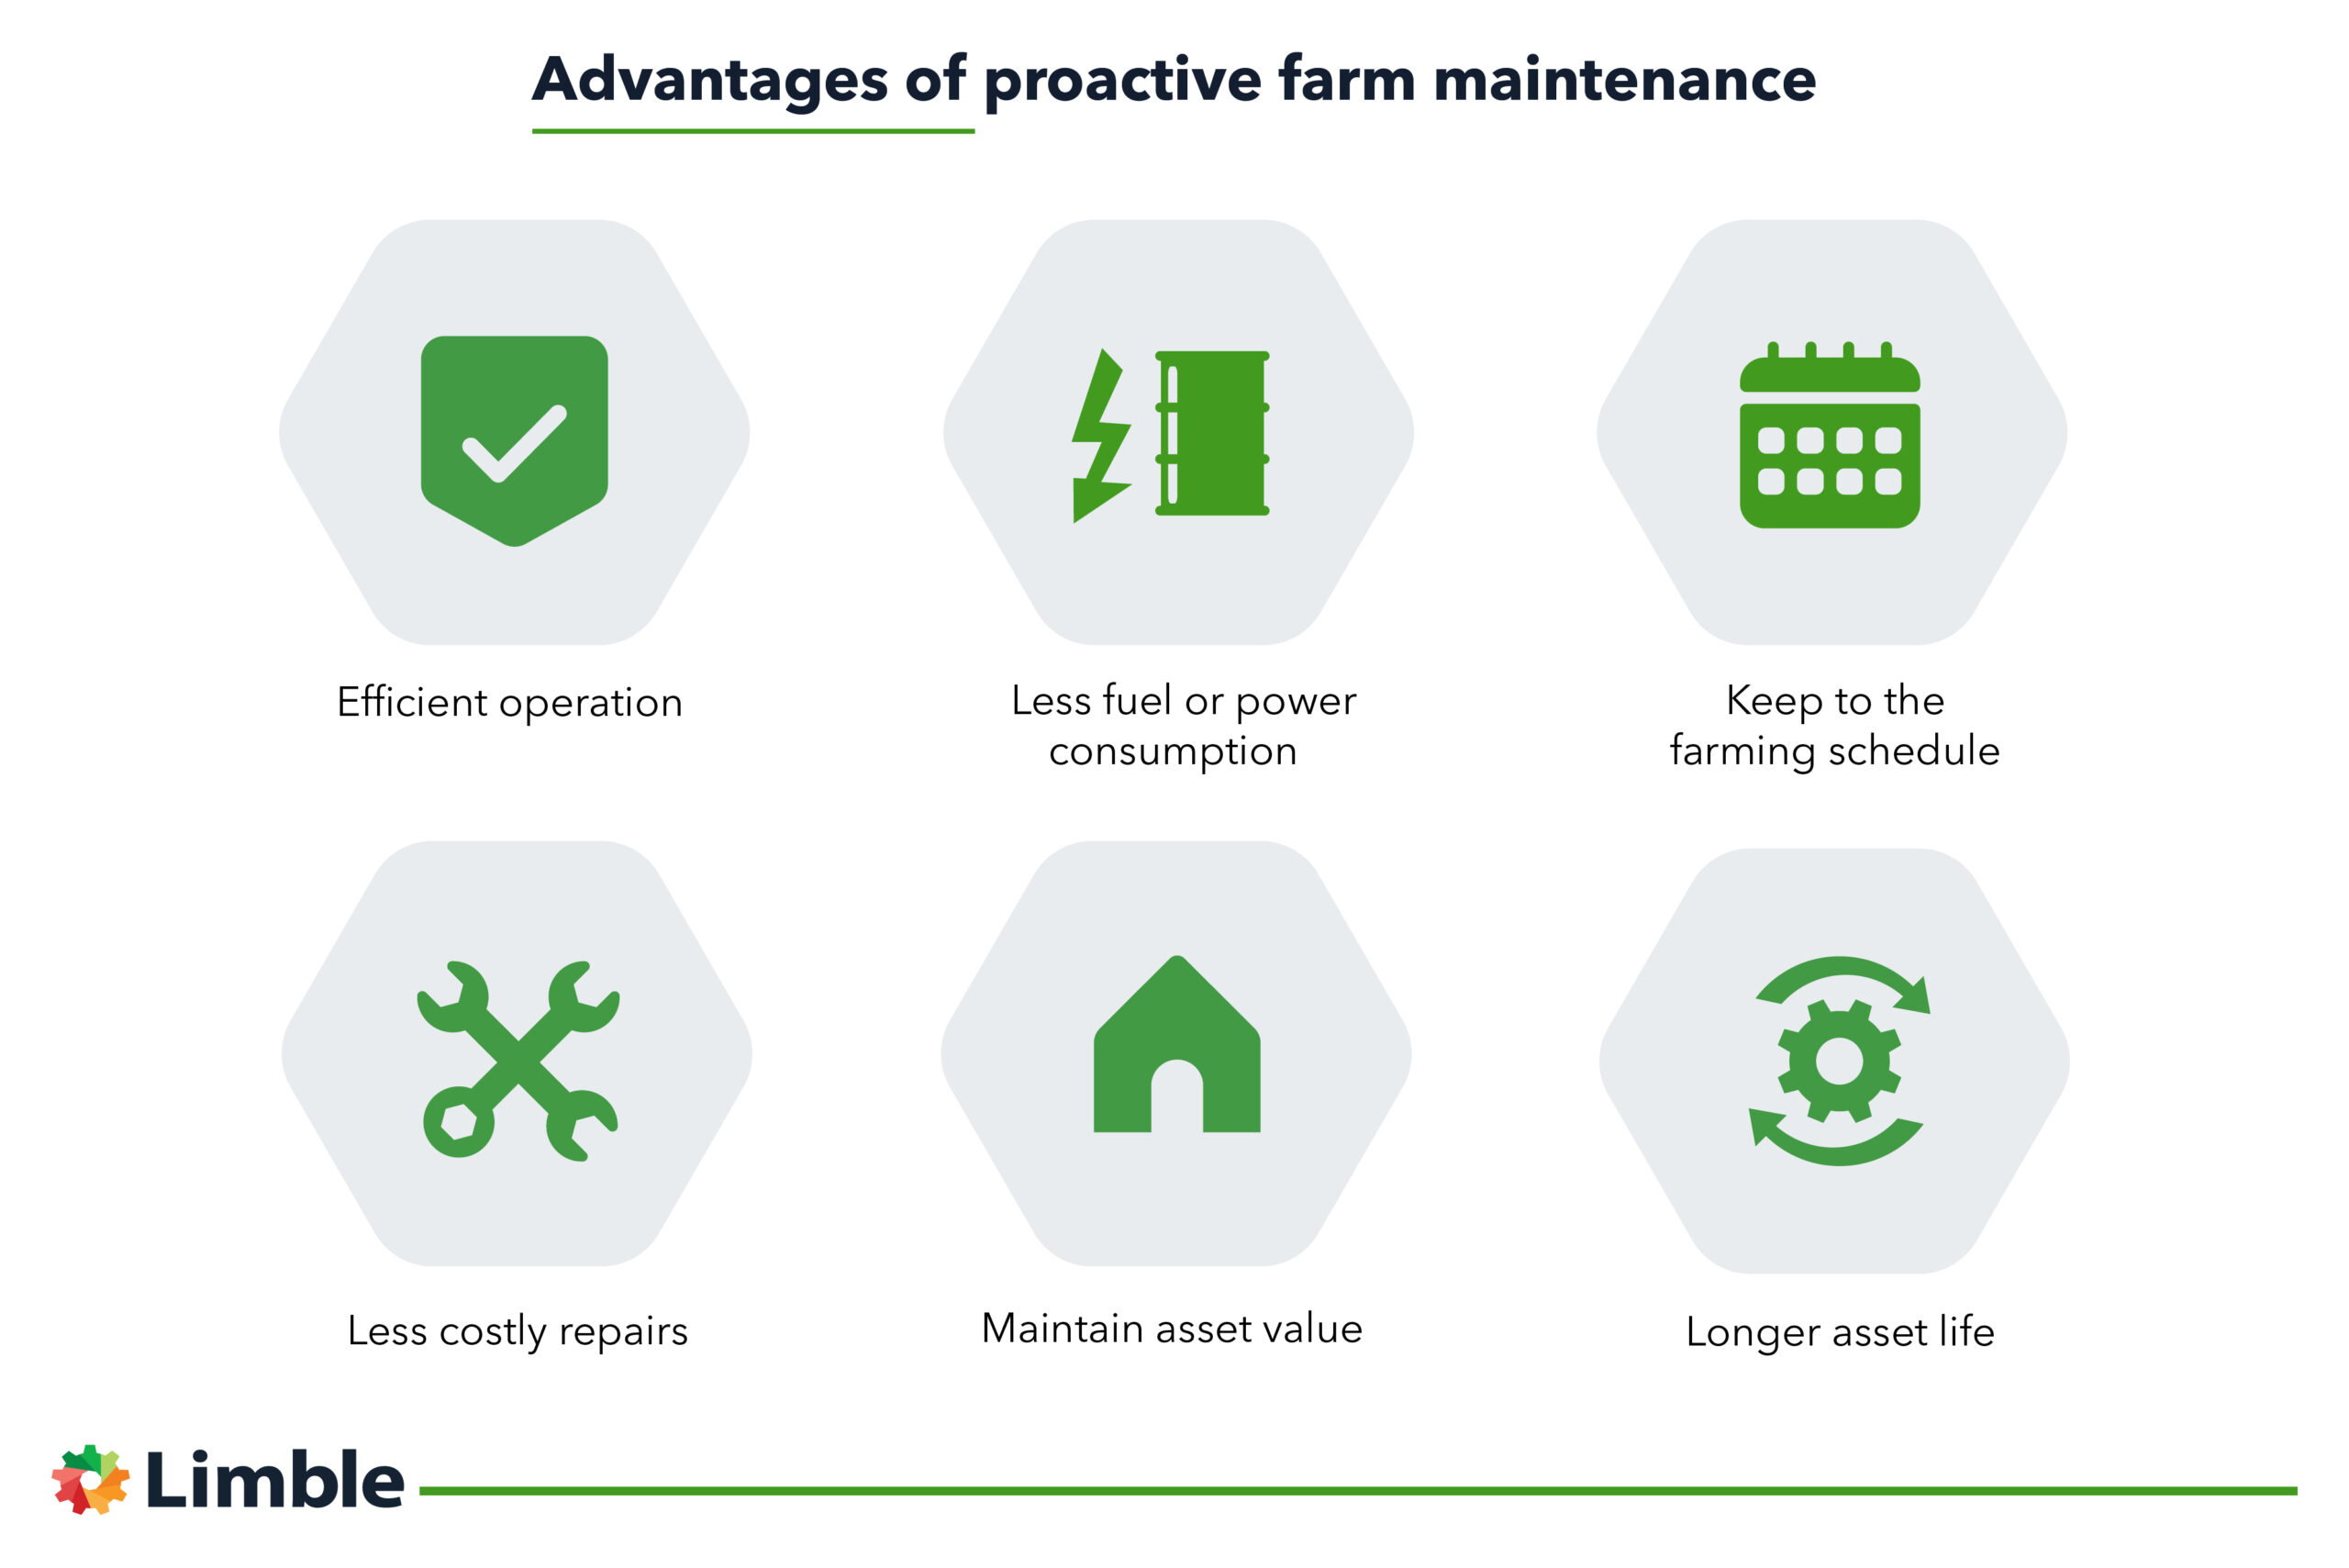 proactive farm maintenance advantages